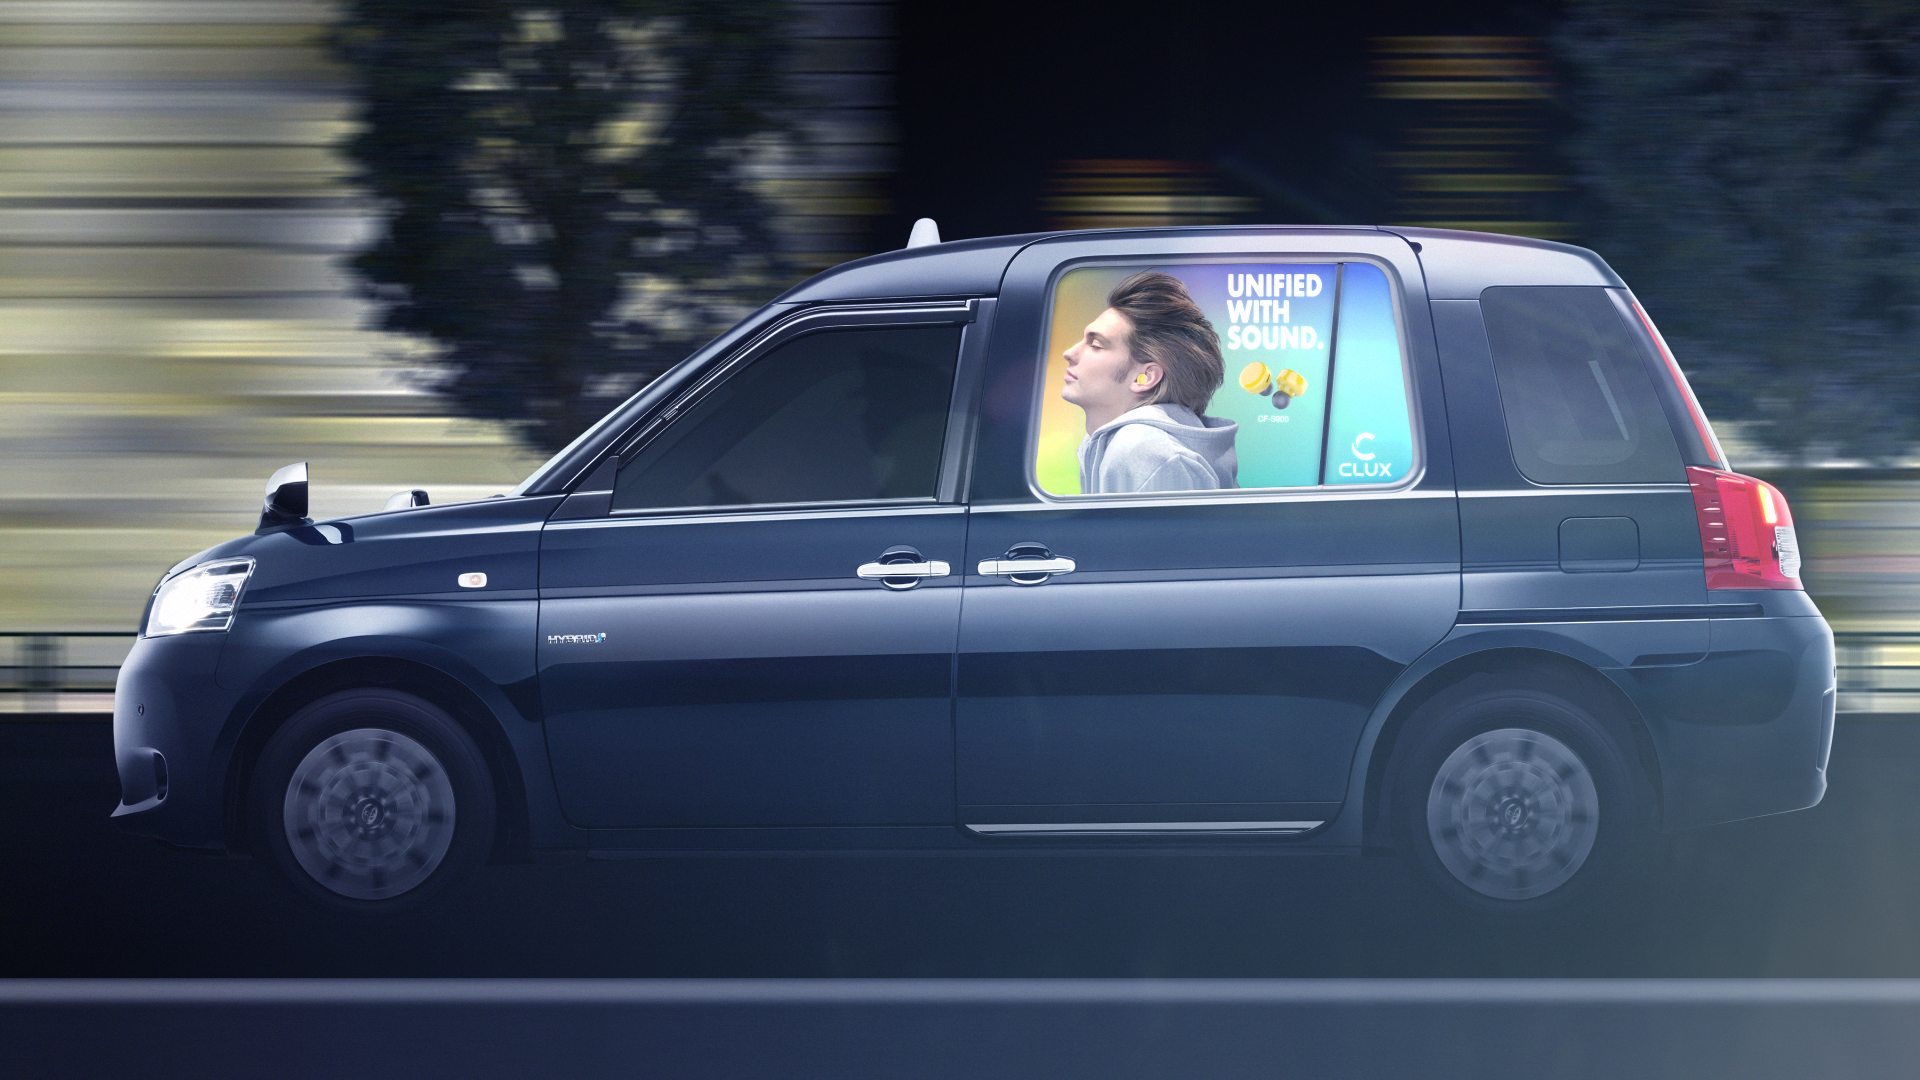  タクシーのサイドガラスに広告を映し出す国内初のサービス「THE TOKYO MOBILITY GALLERY Canvas」がスタート